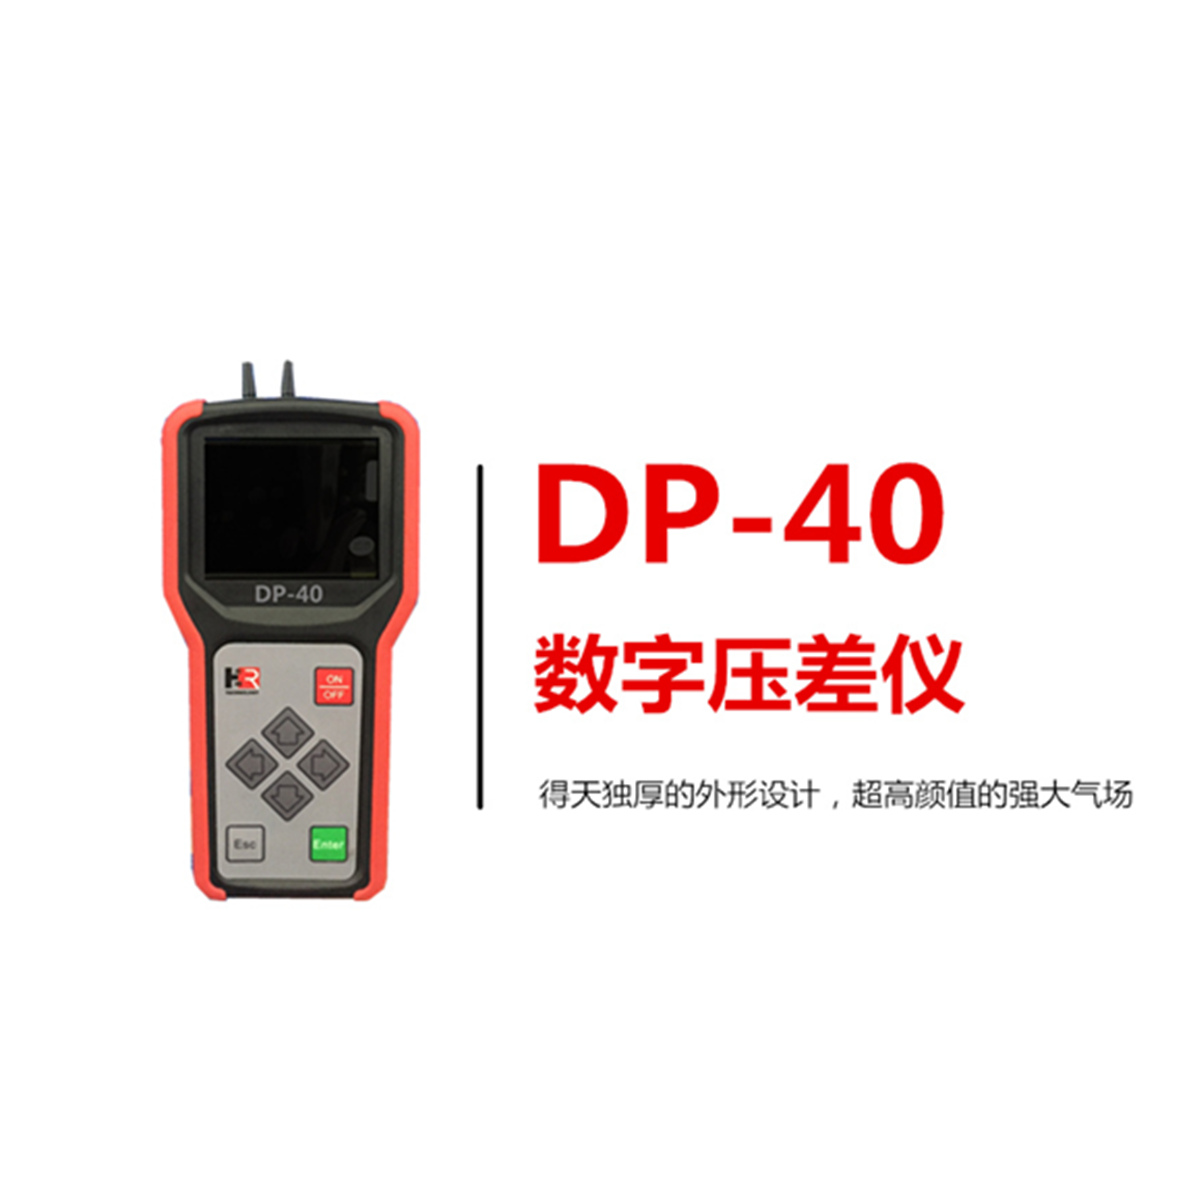 【宏瑞科技】DP-40压差仪，给你点“颜色”瞧瞧！